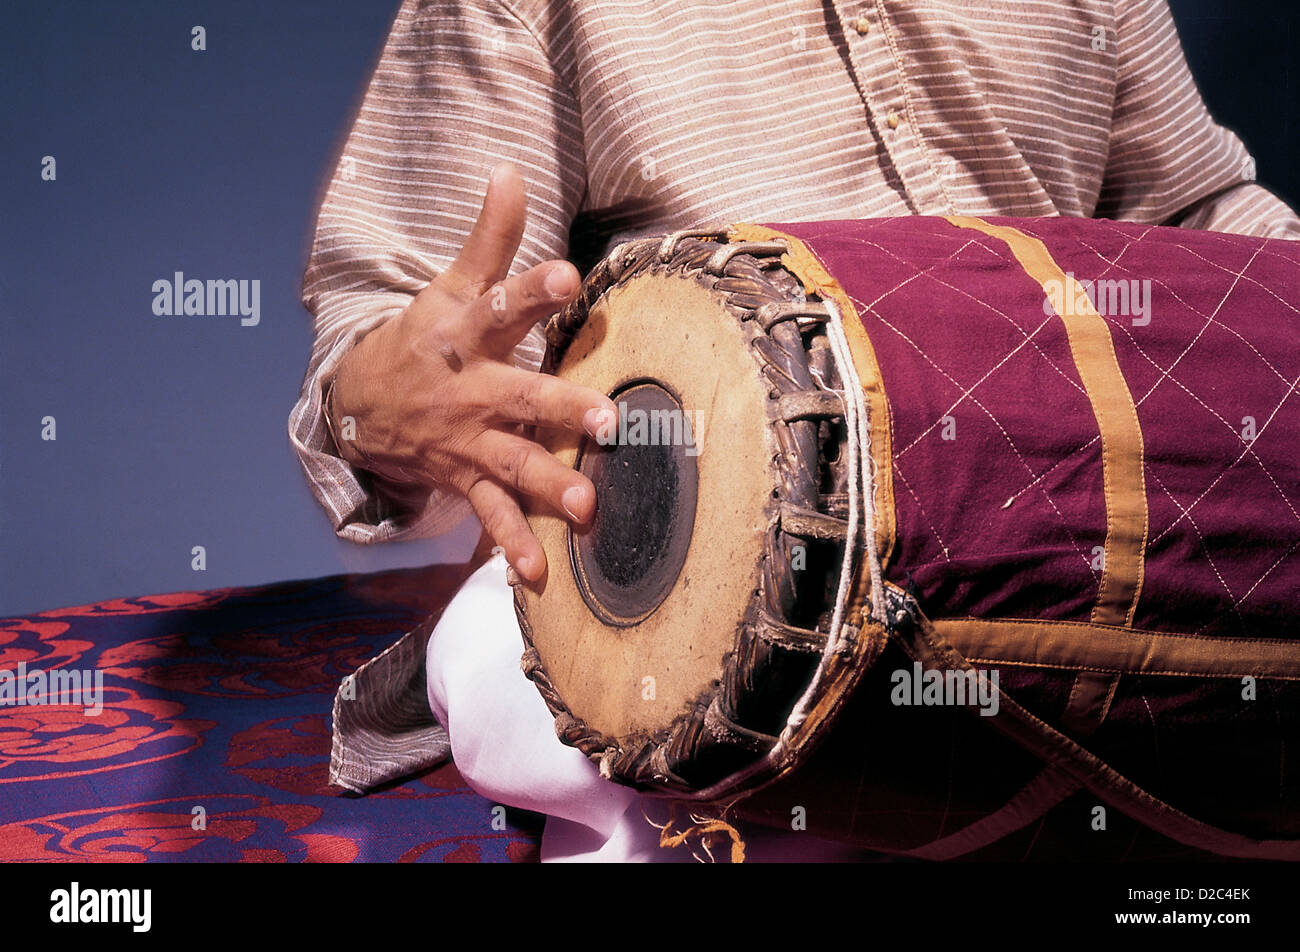 Indischer klassischer Musiker spielen mit der rechten Hand Percussion Musikinstrument Mridangam In Konzert, Indien Stockfoto